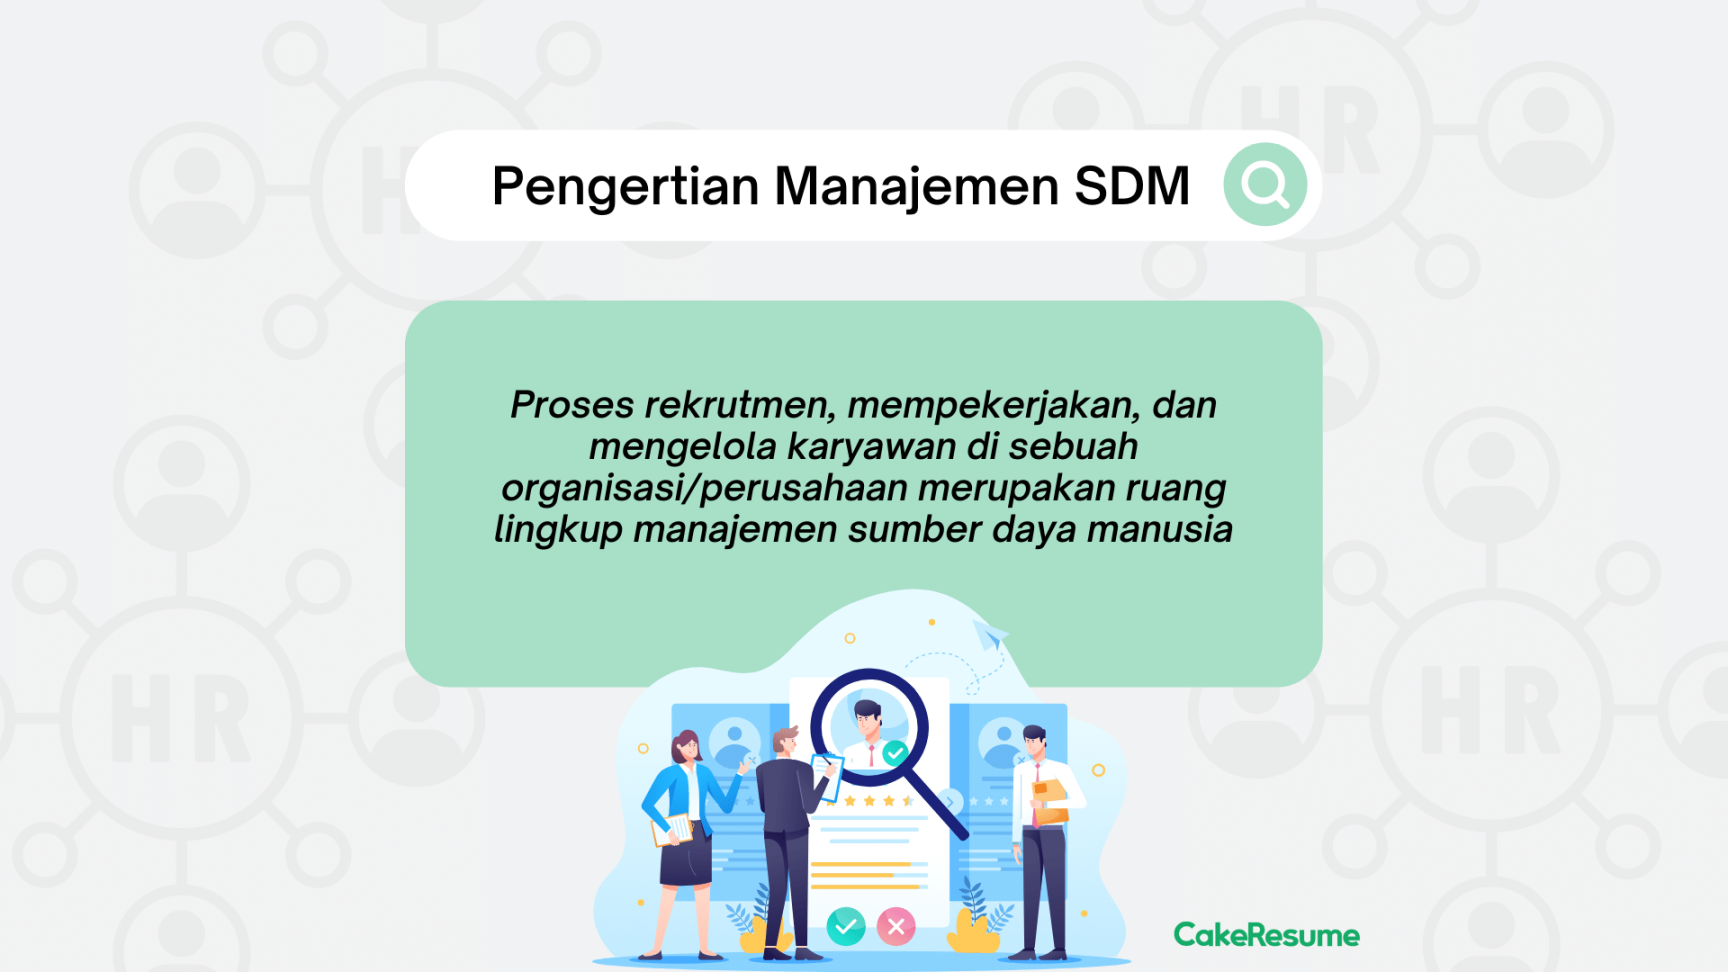 Manajemen SDM: Pengertian, Fungsi, Tujuan dan Manfaatnya  CakeResume